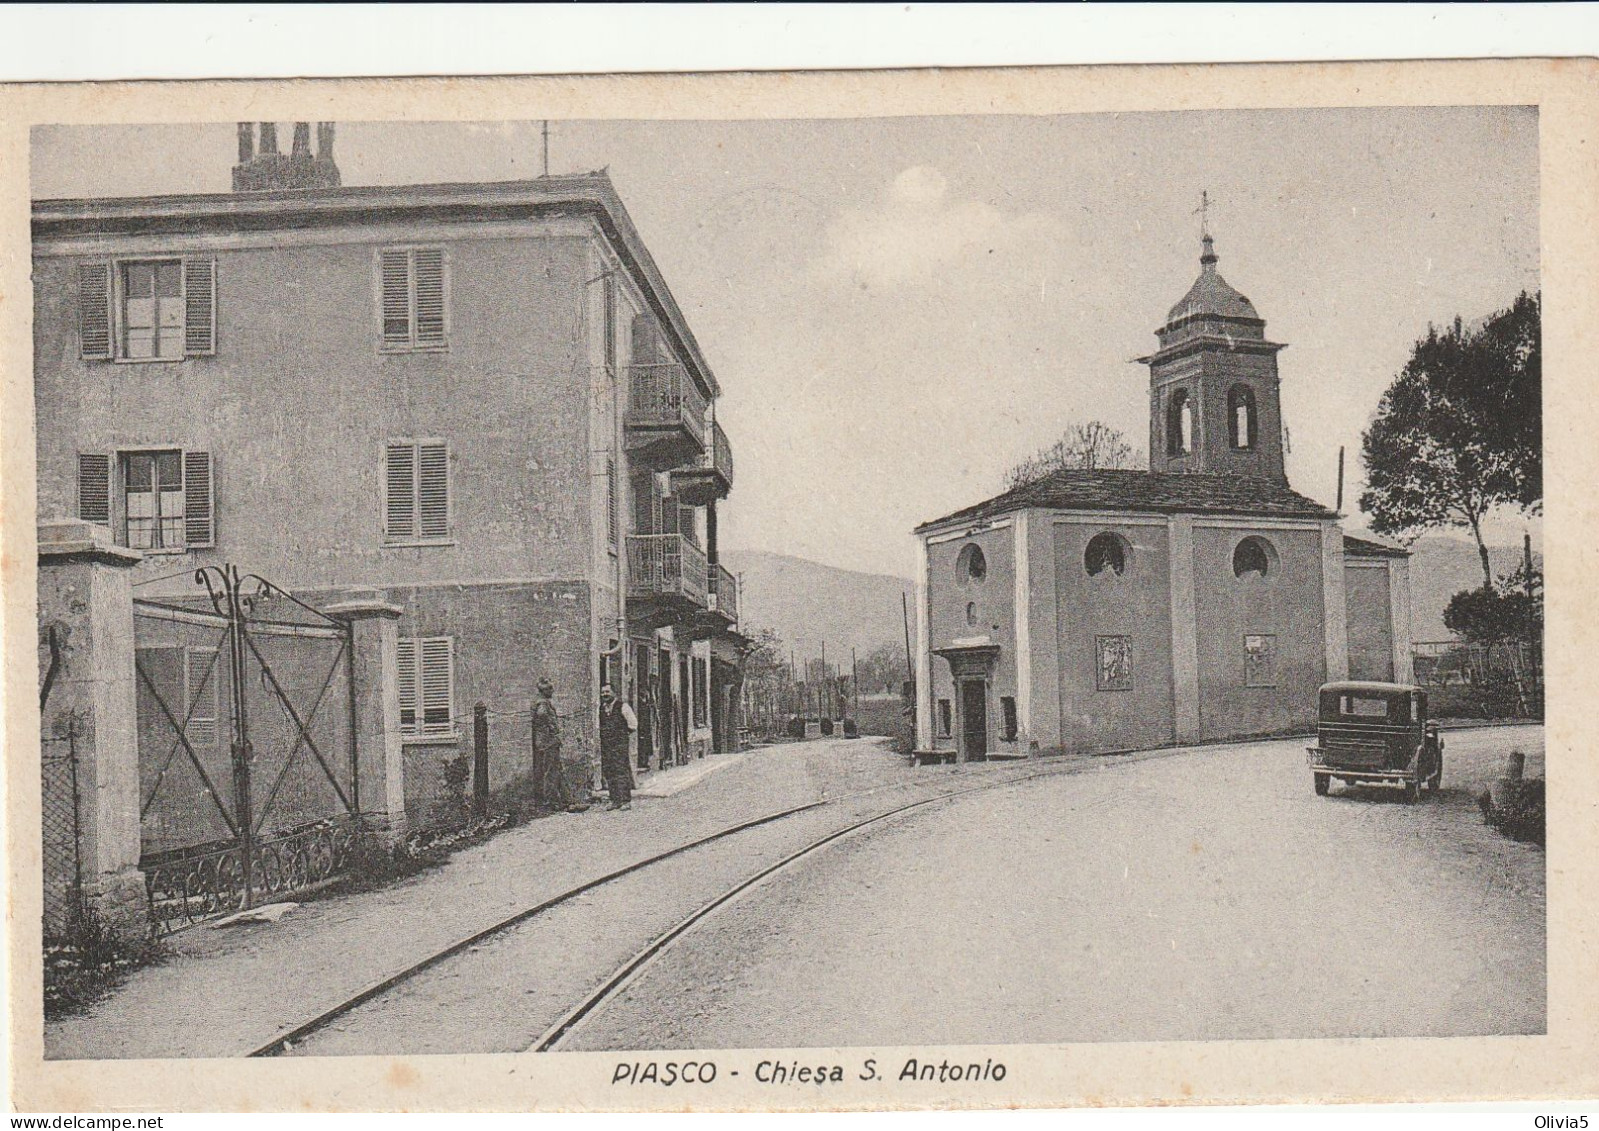 PIASCO - CHIESA S. ANTONIO - Cuneo